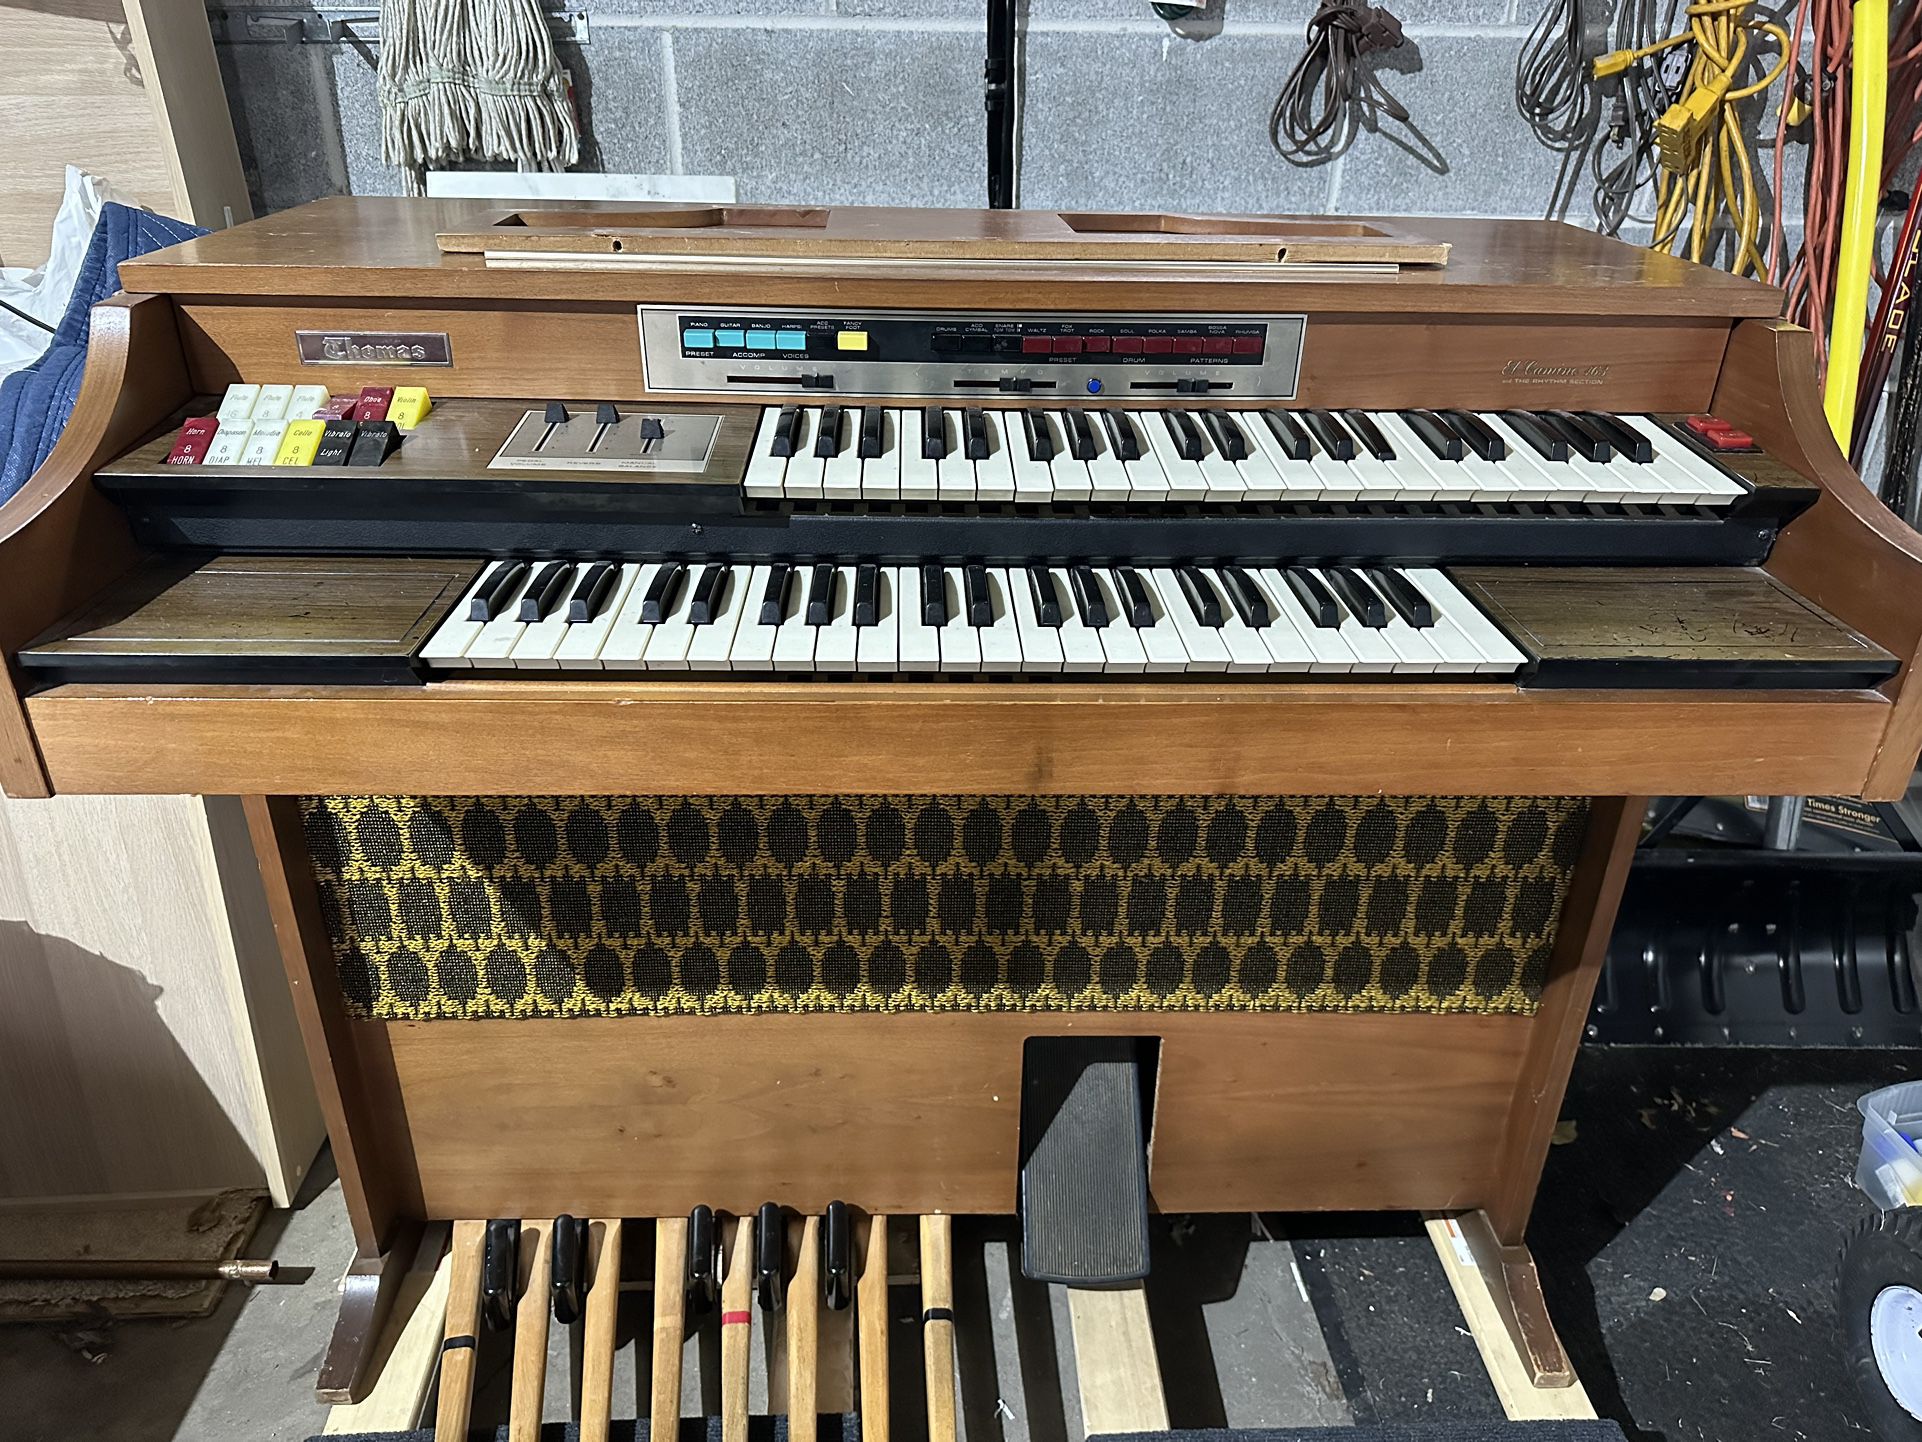 Thomas El Camino 163 Electric Organ - FREE